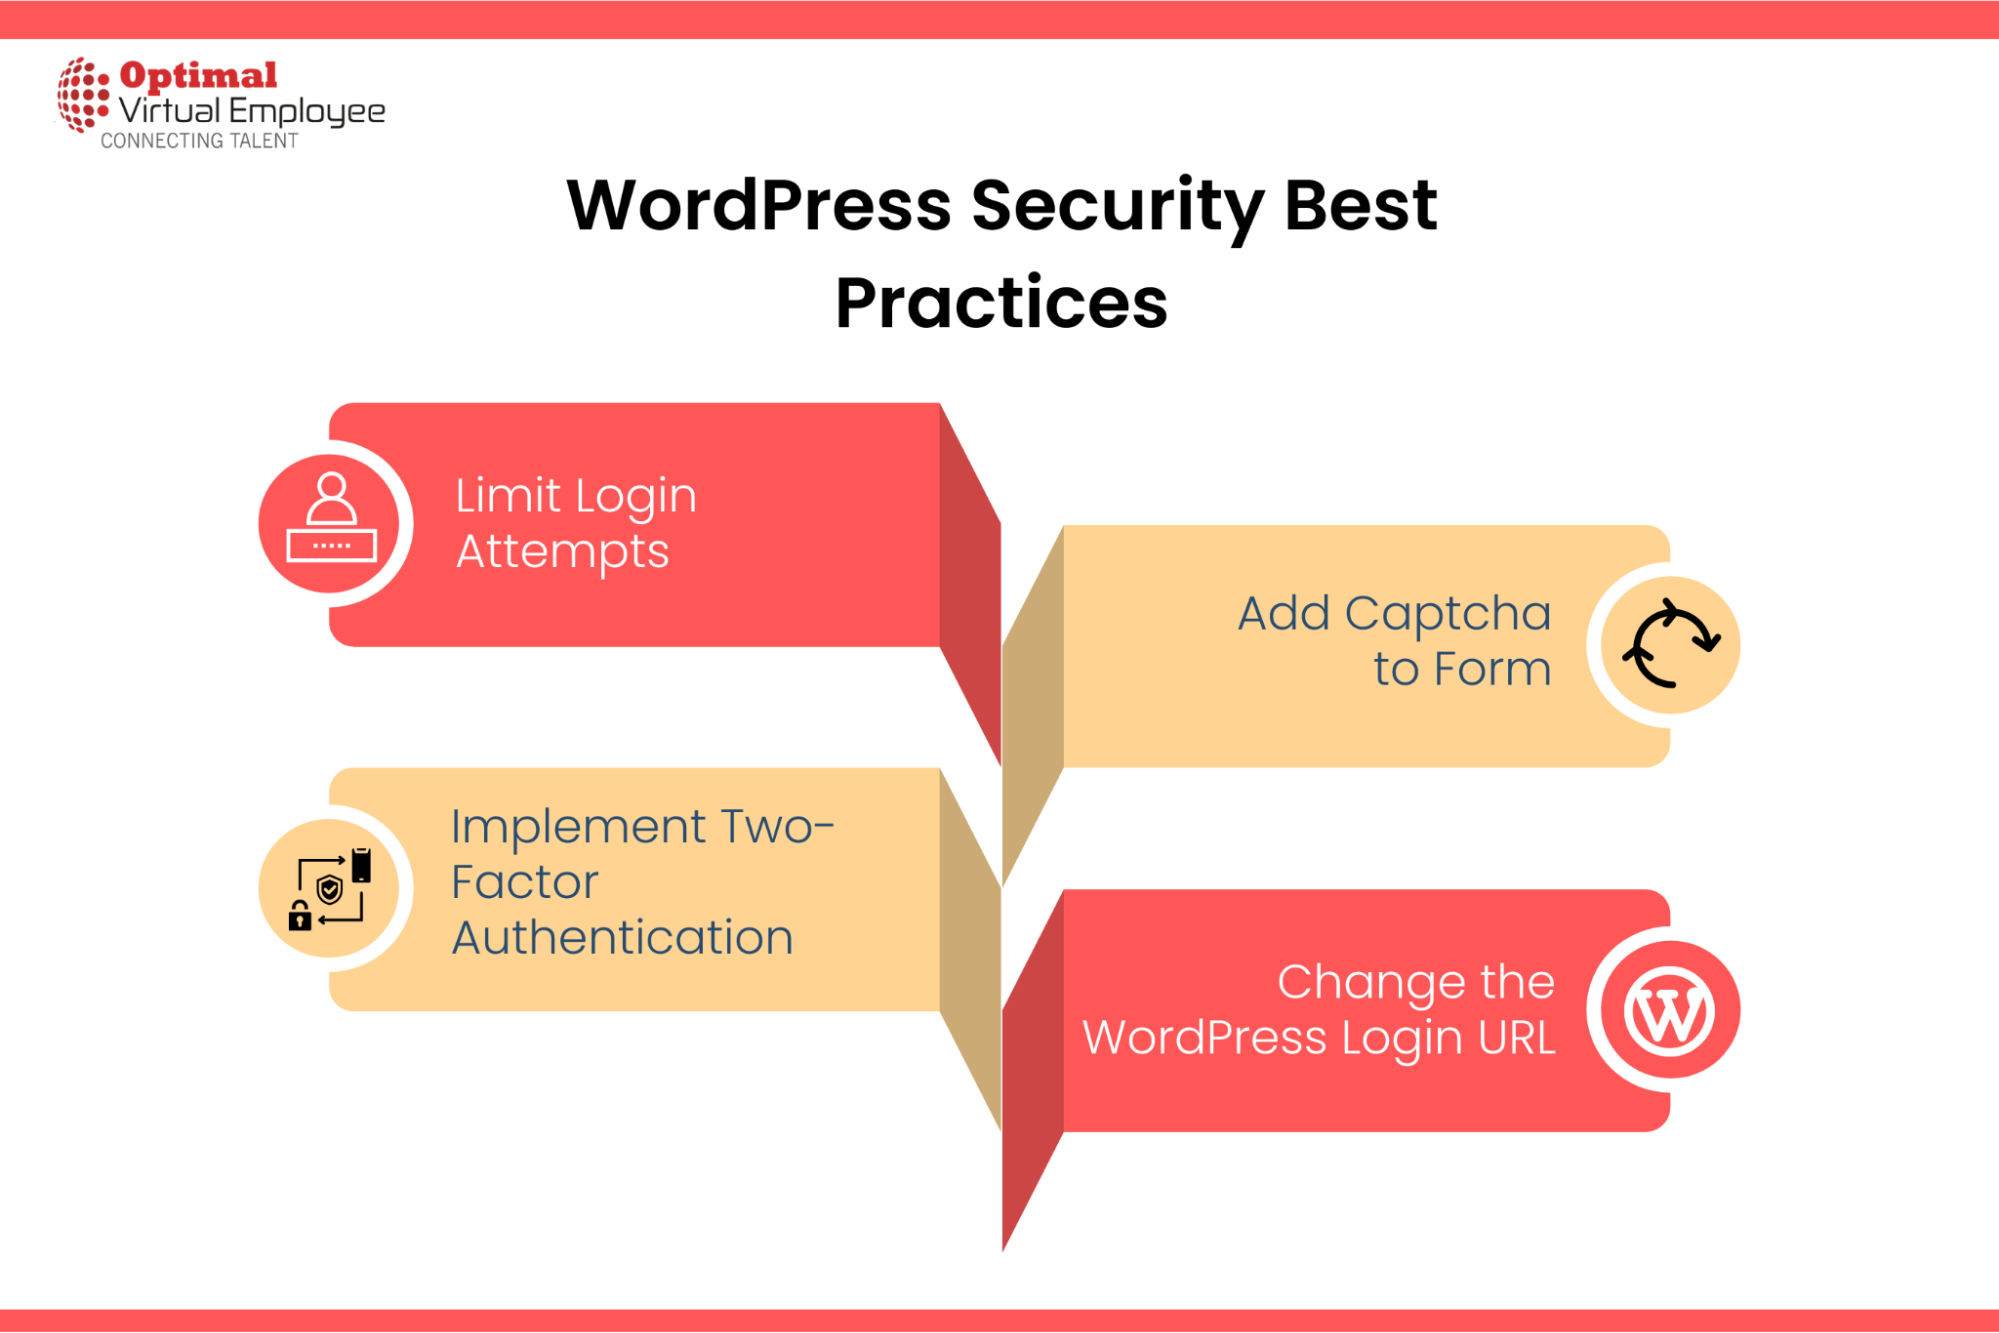 6 WordPress Security Best Practices